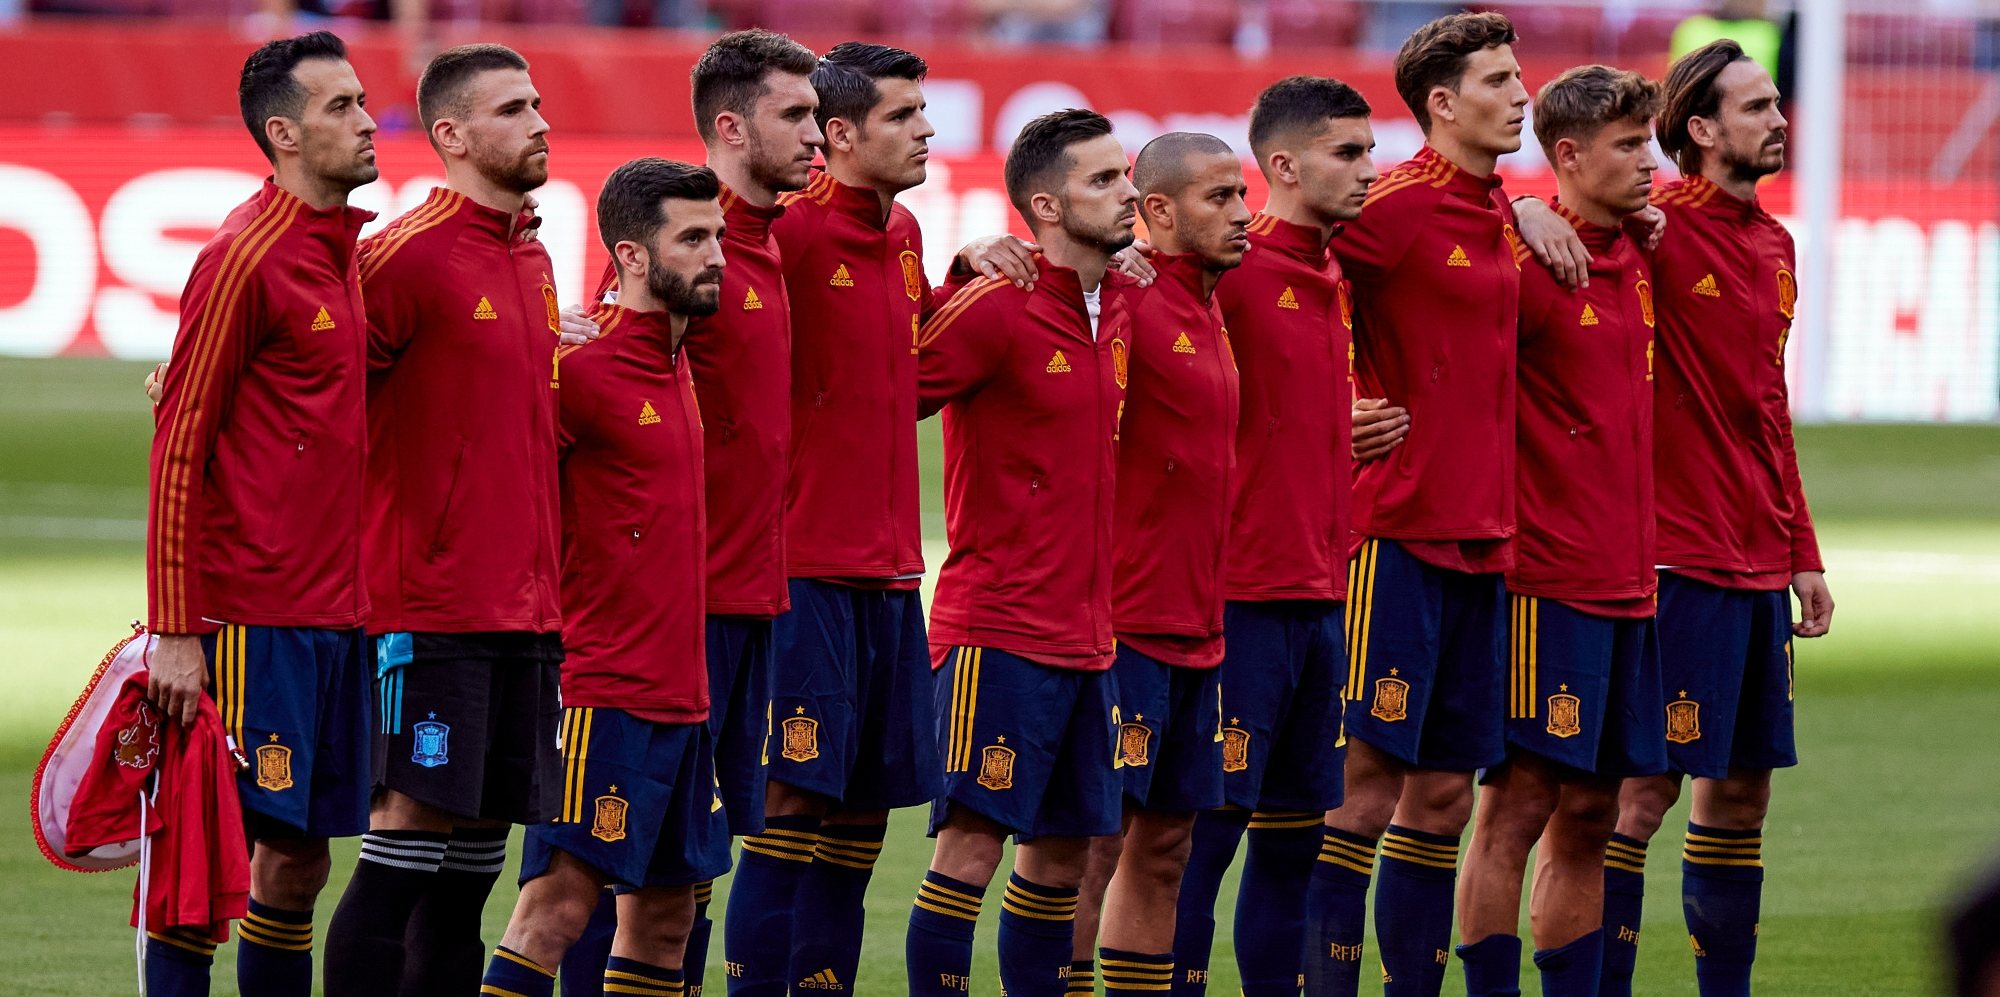 Espanha garantiu com tranquilidade apuramento para mais um Europeu, somando oito vitórias e dois empates num grupo com Suécia, Noruega, Roménia, Ilhas Faroé e Malta